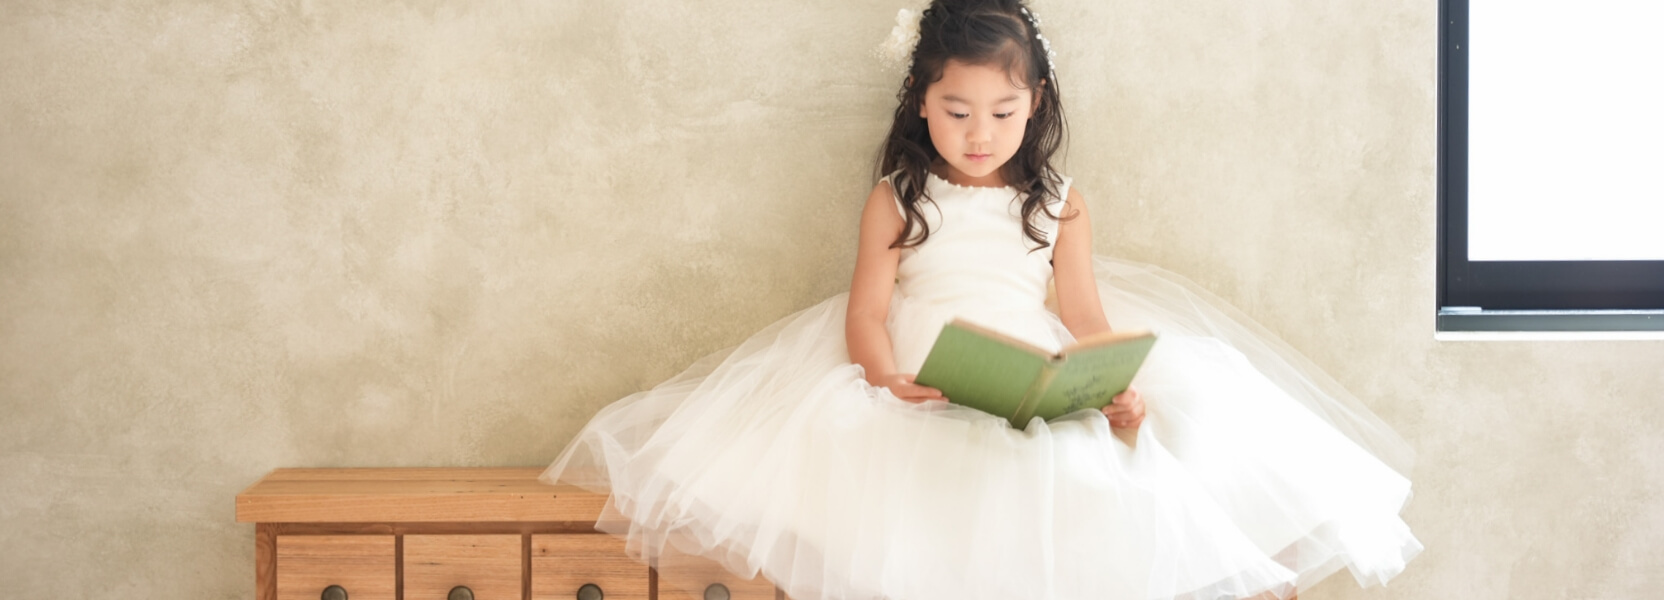 ドレスを着た女の子が本を読む